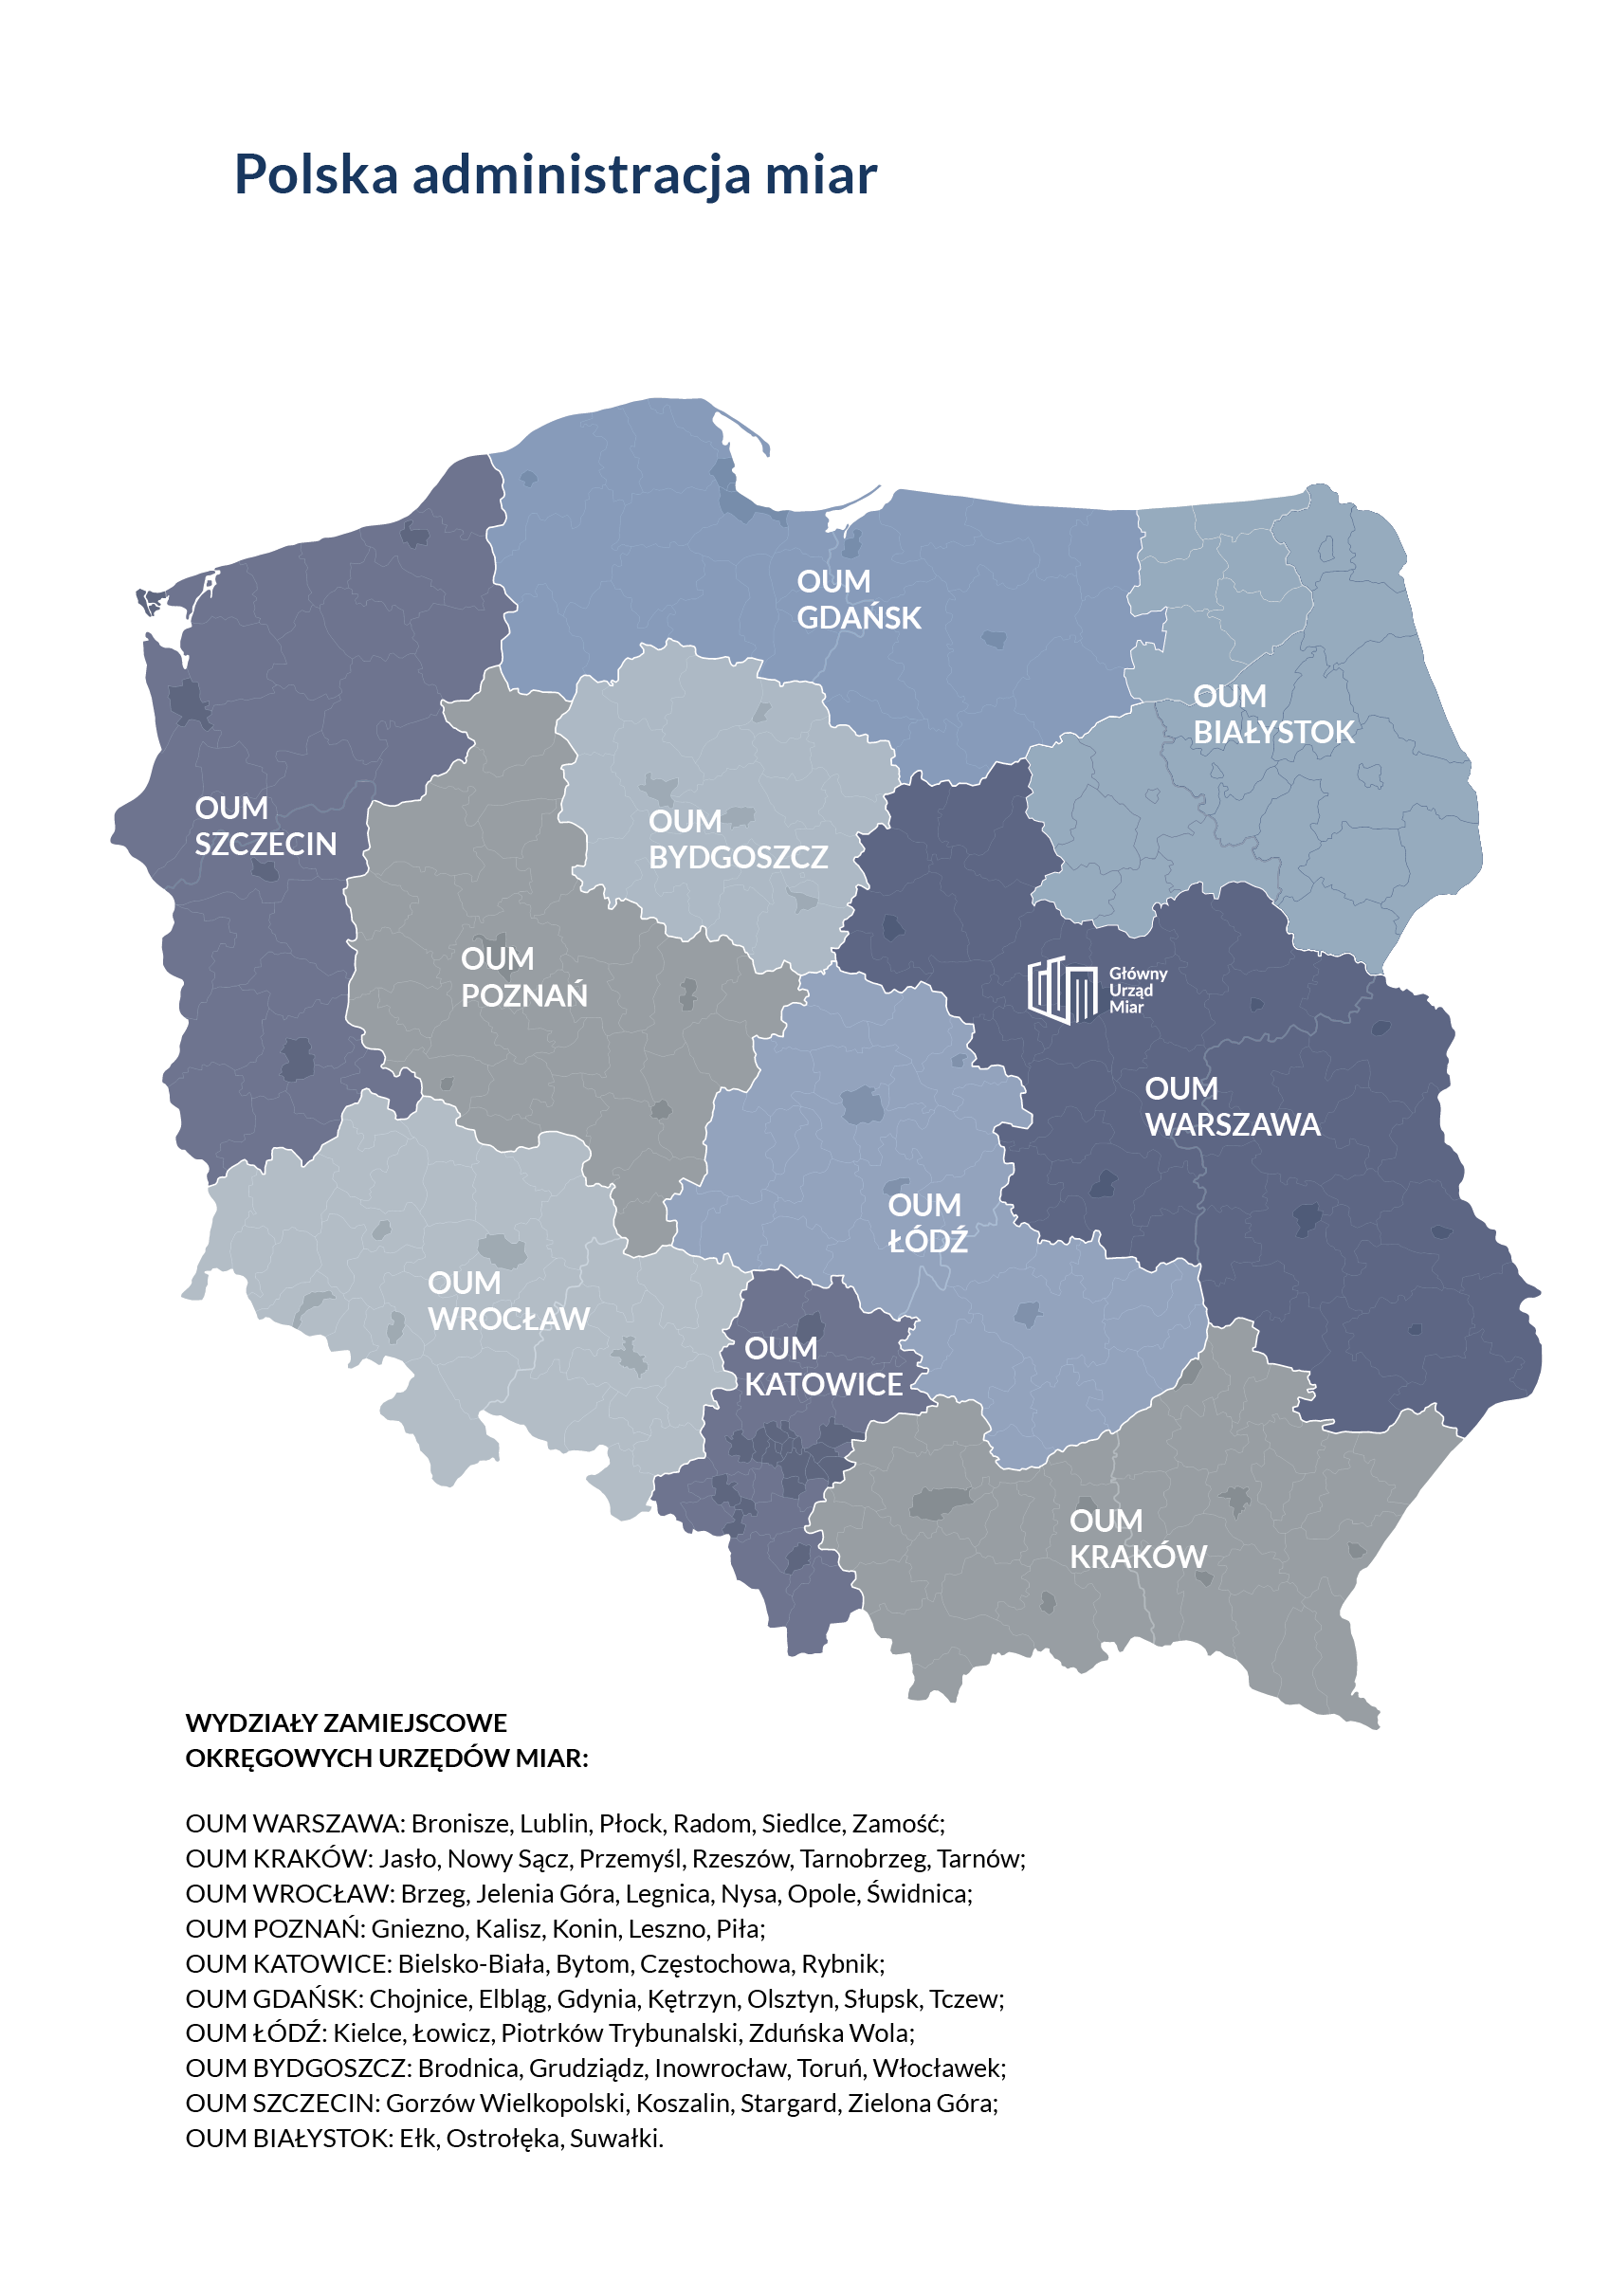 Mapa polskiej administracji miar. Na mapie zaznaczonych 10 okręgów.